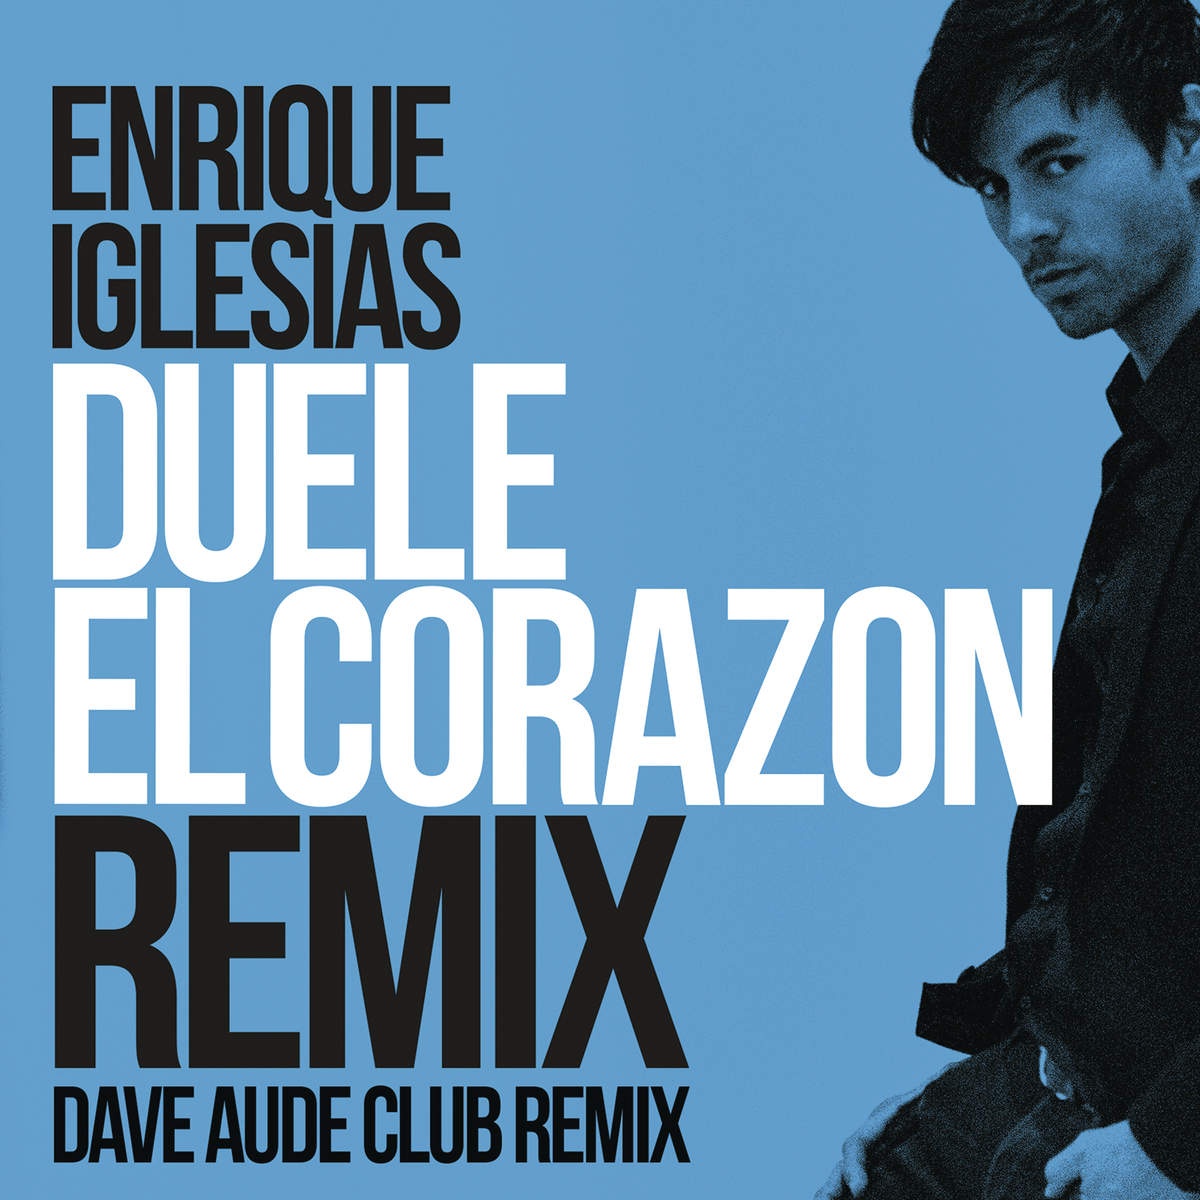 DUELE EL CORAZON Dave Aude Club Mix